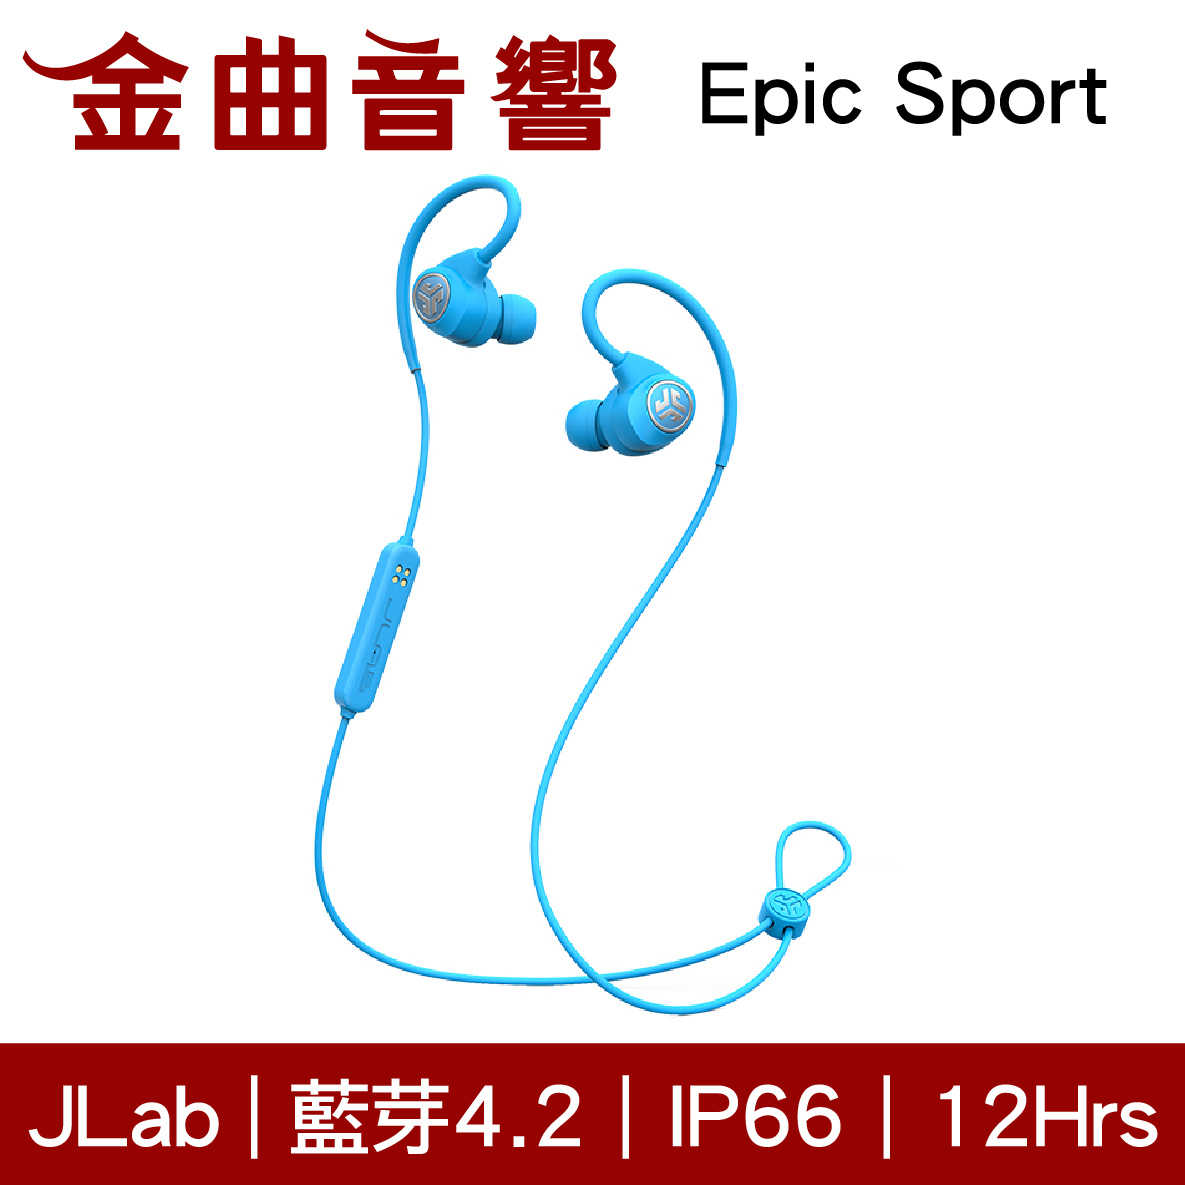 JLab Epic Sport 黑色 藍牙運動耳機 冠軍運動耳機再進化 2018革命性創新技術